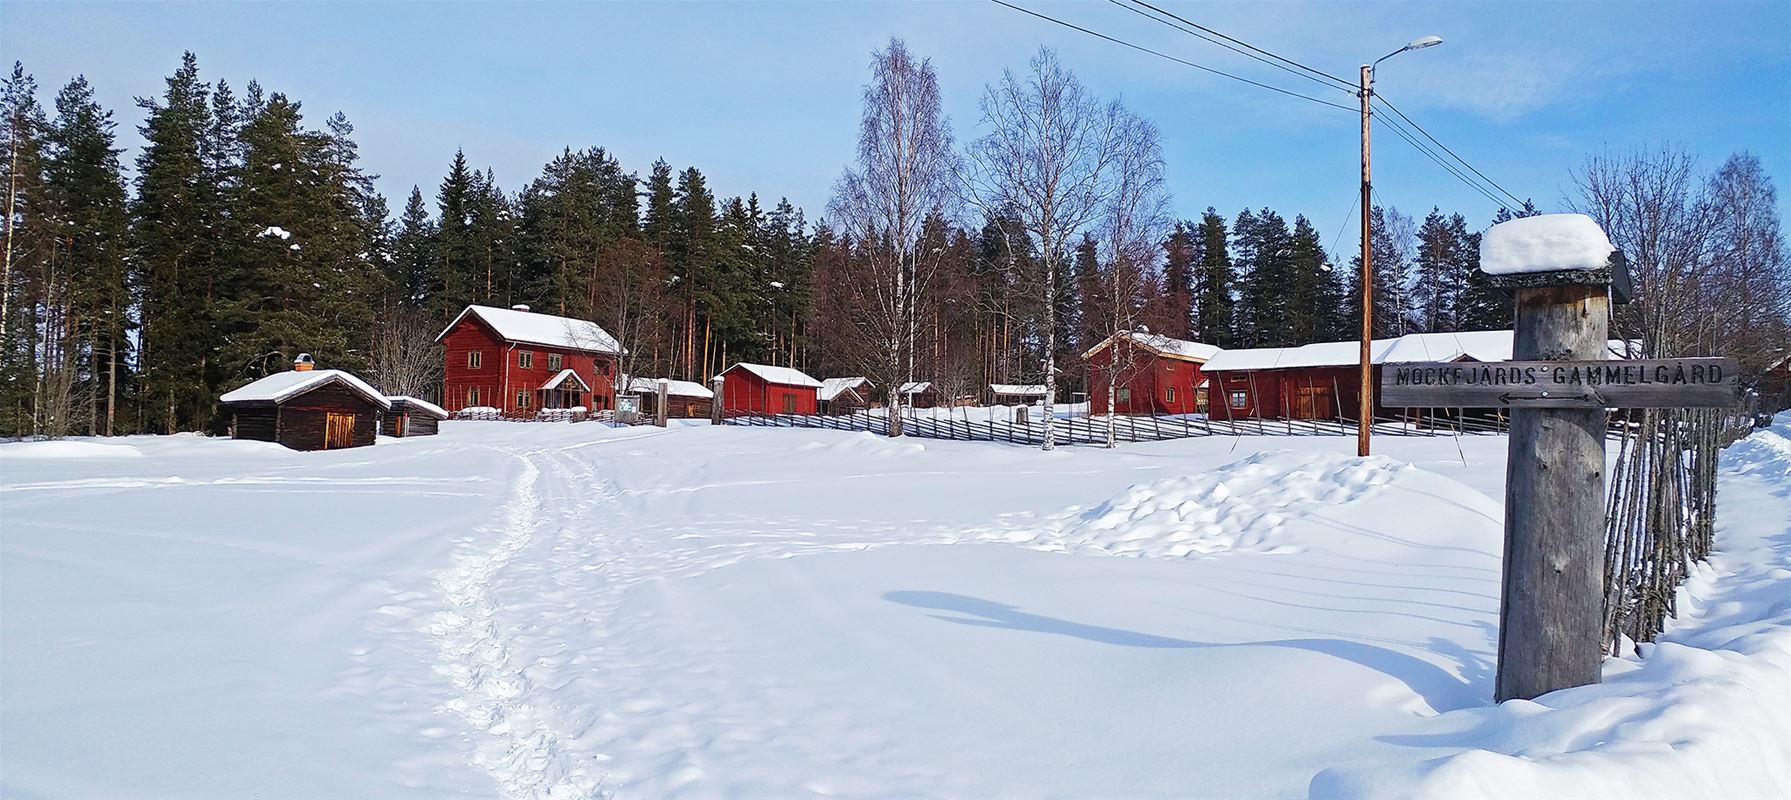  Röda hus med snö på hela gården.